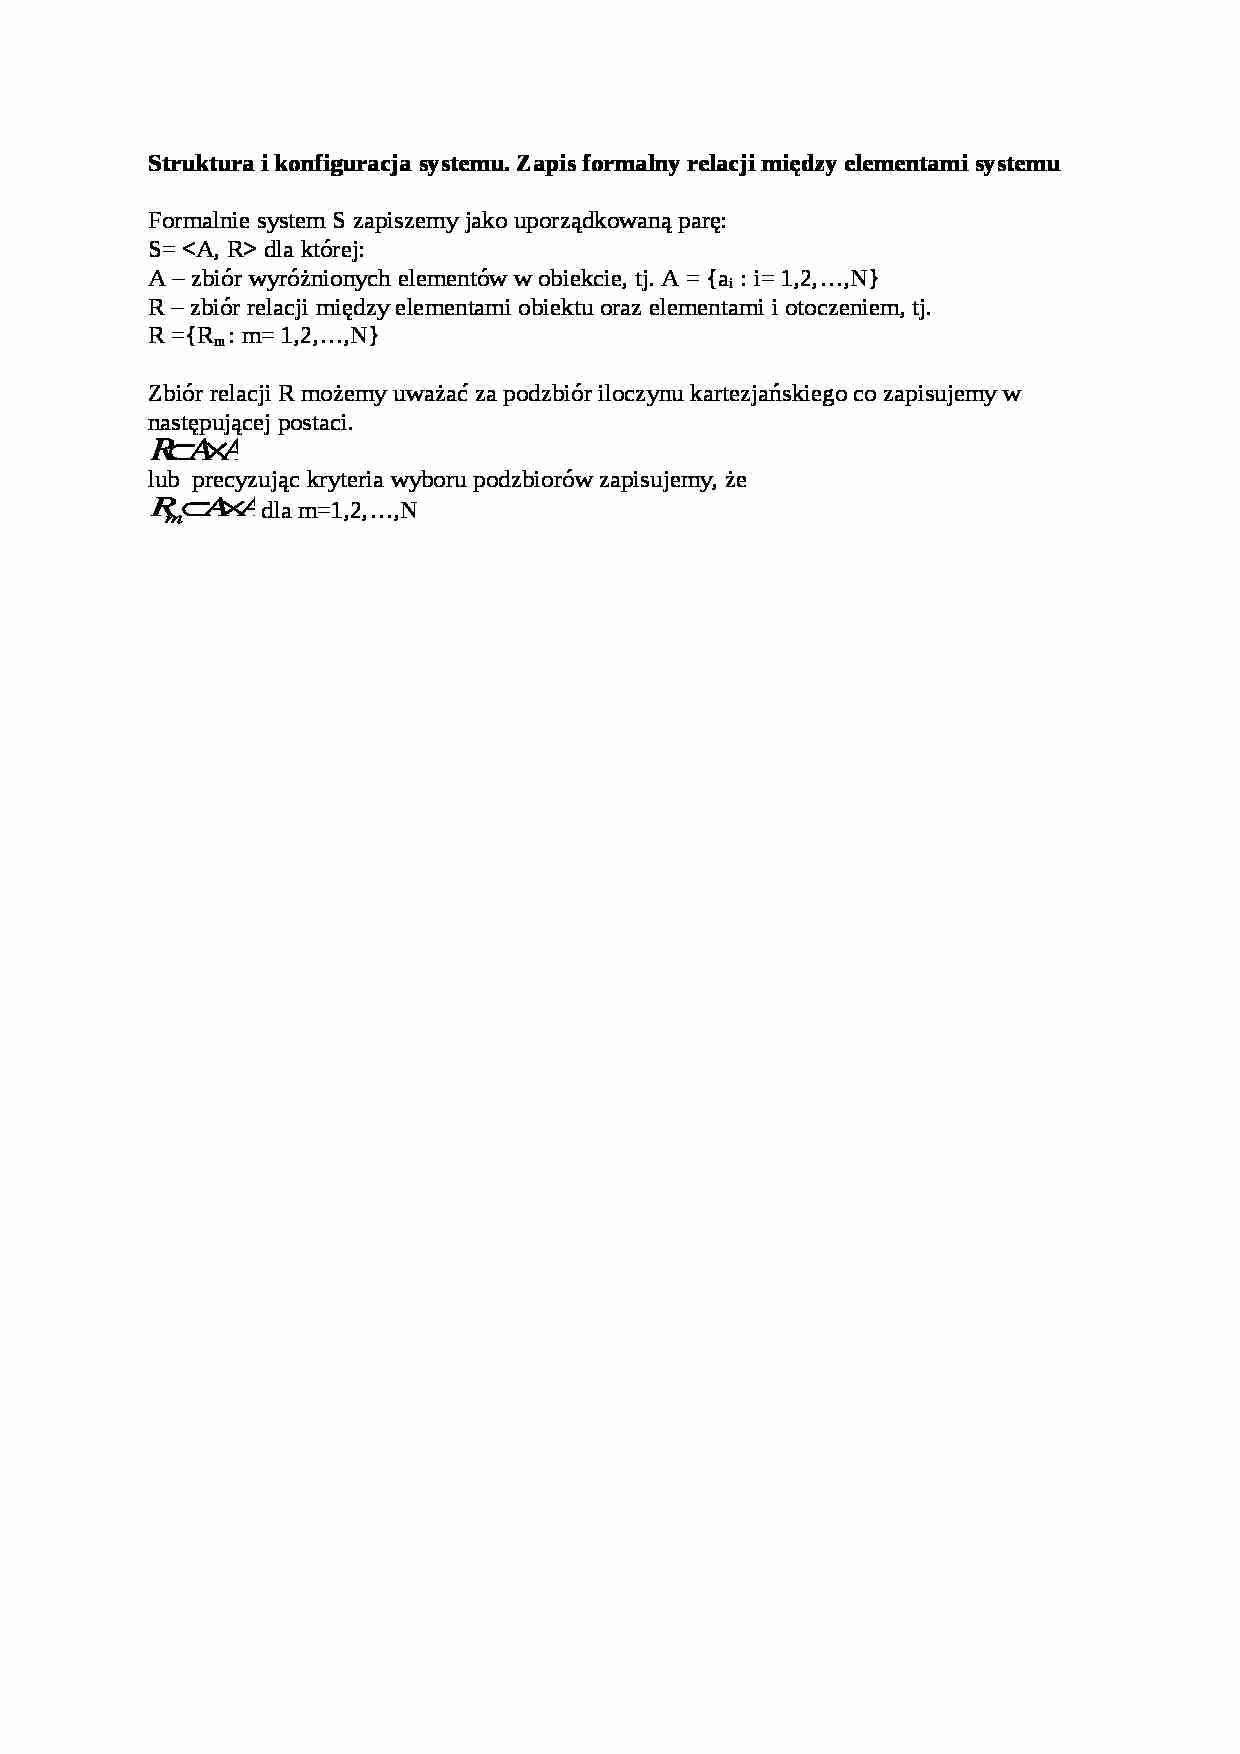 Struktura i konfiguracja systemu oraz zapis formalny - wykład - strona 1